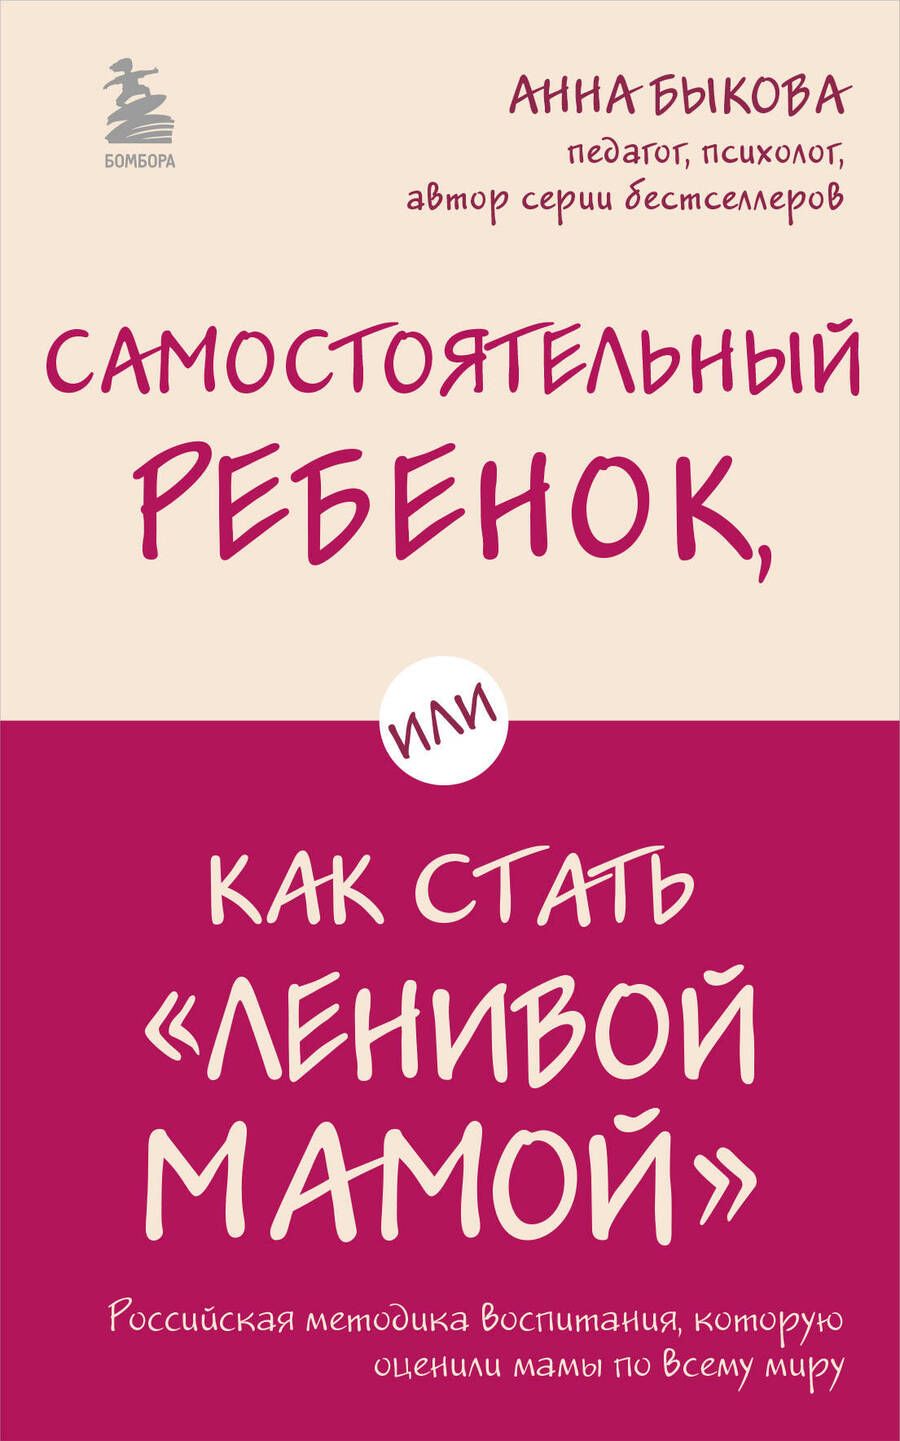 Обложка книги "Анна Быкова: Самостоятельный ребенок, или Как стать "ленивой мамой""